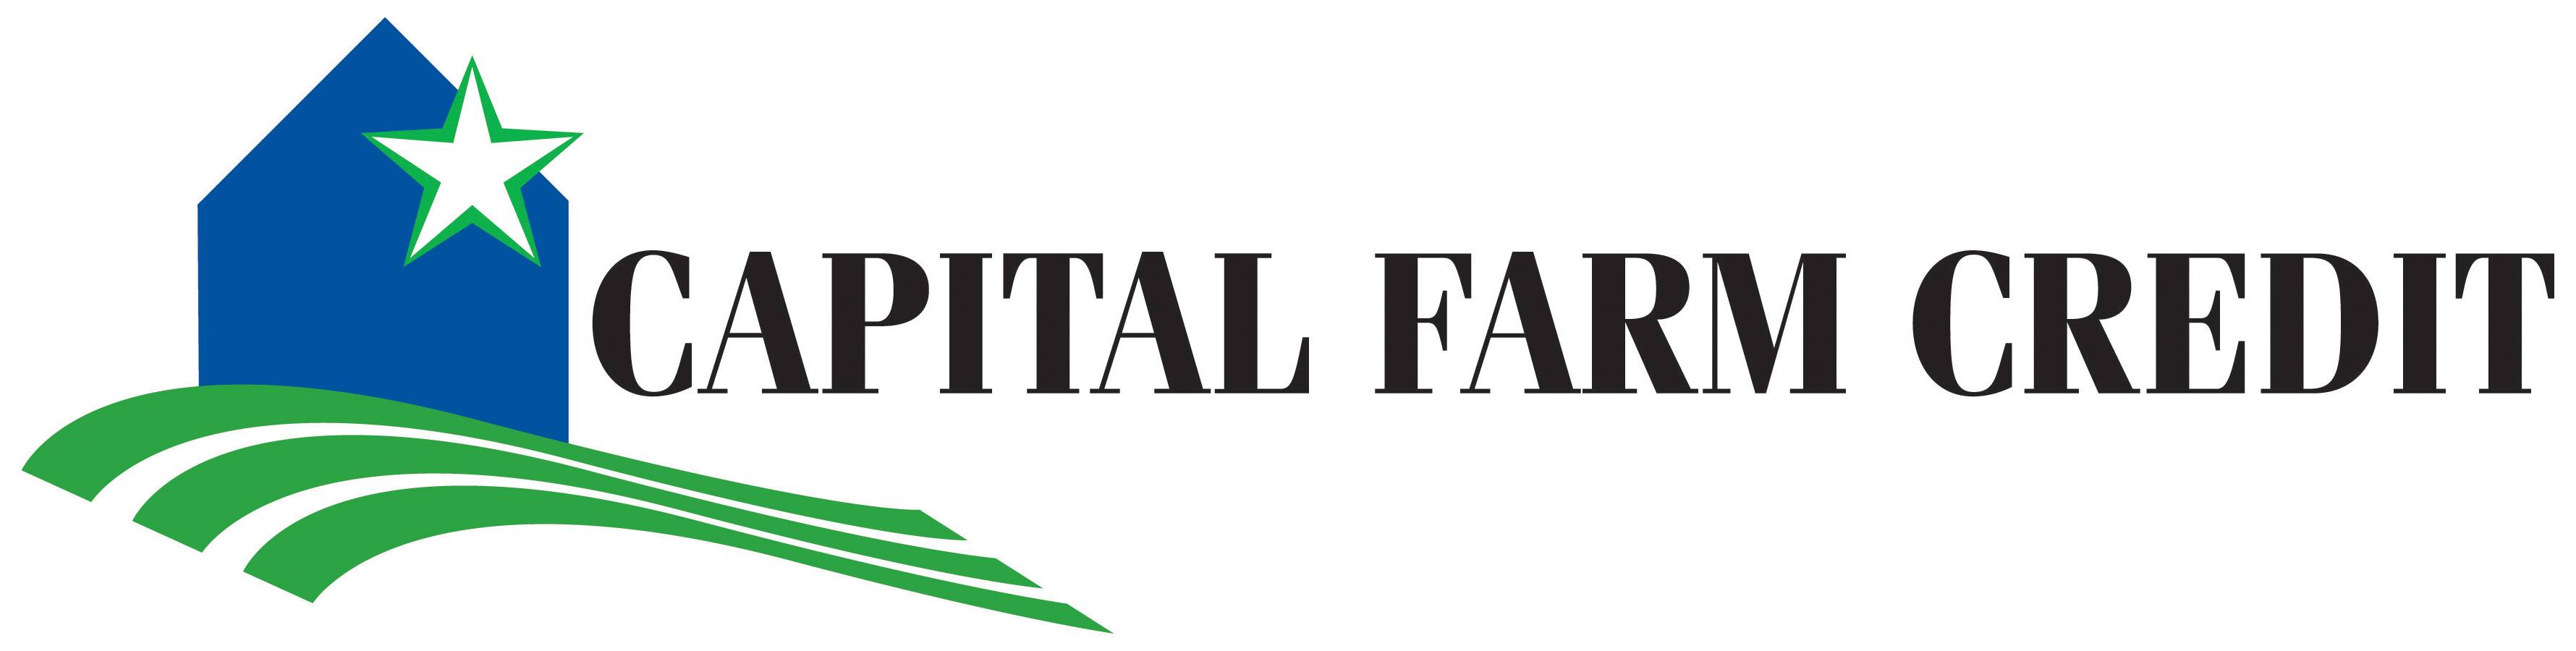 Major sponsor, Capital Farm Credit logo